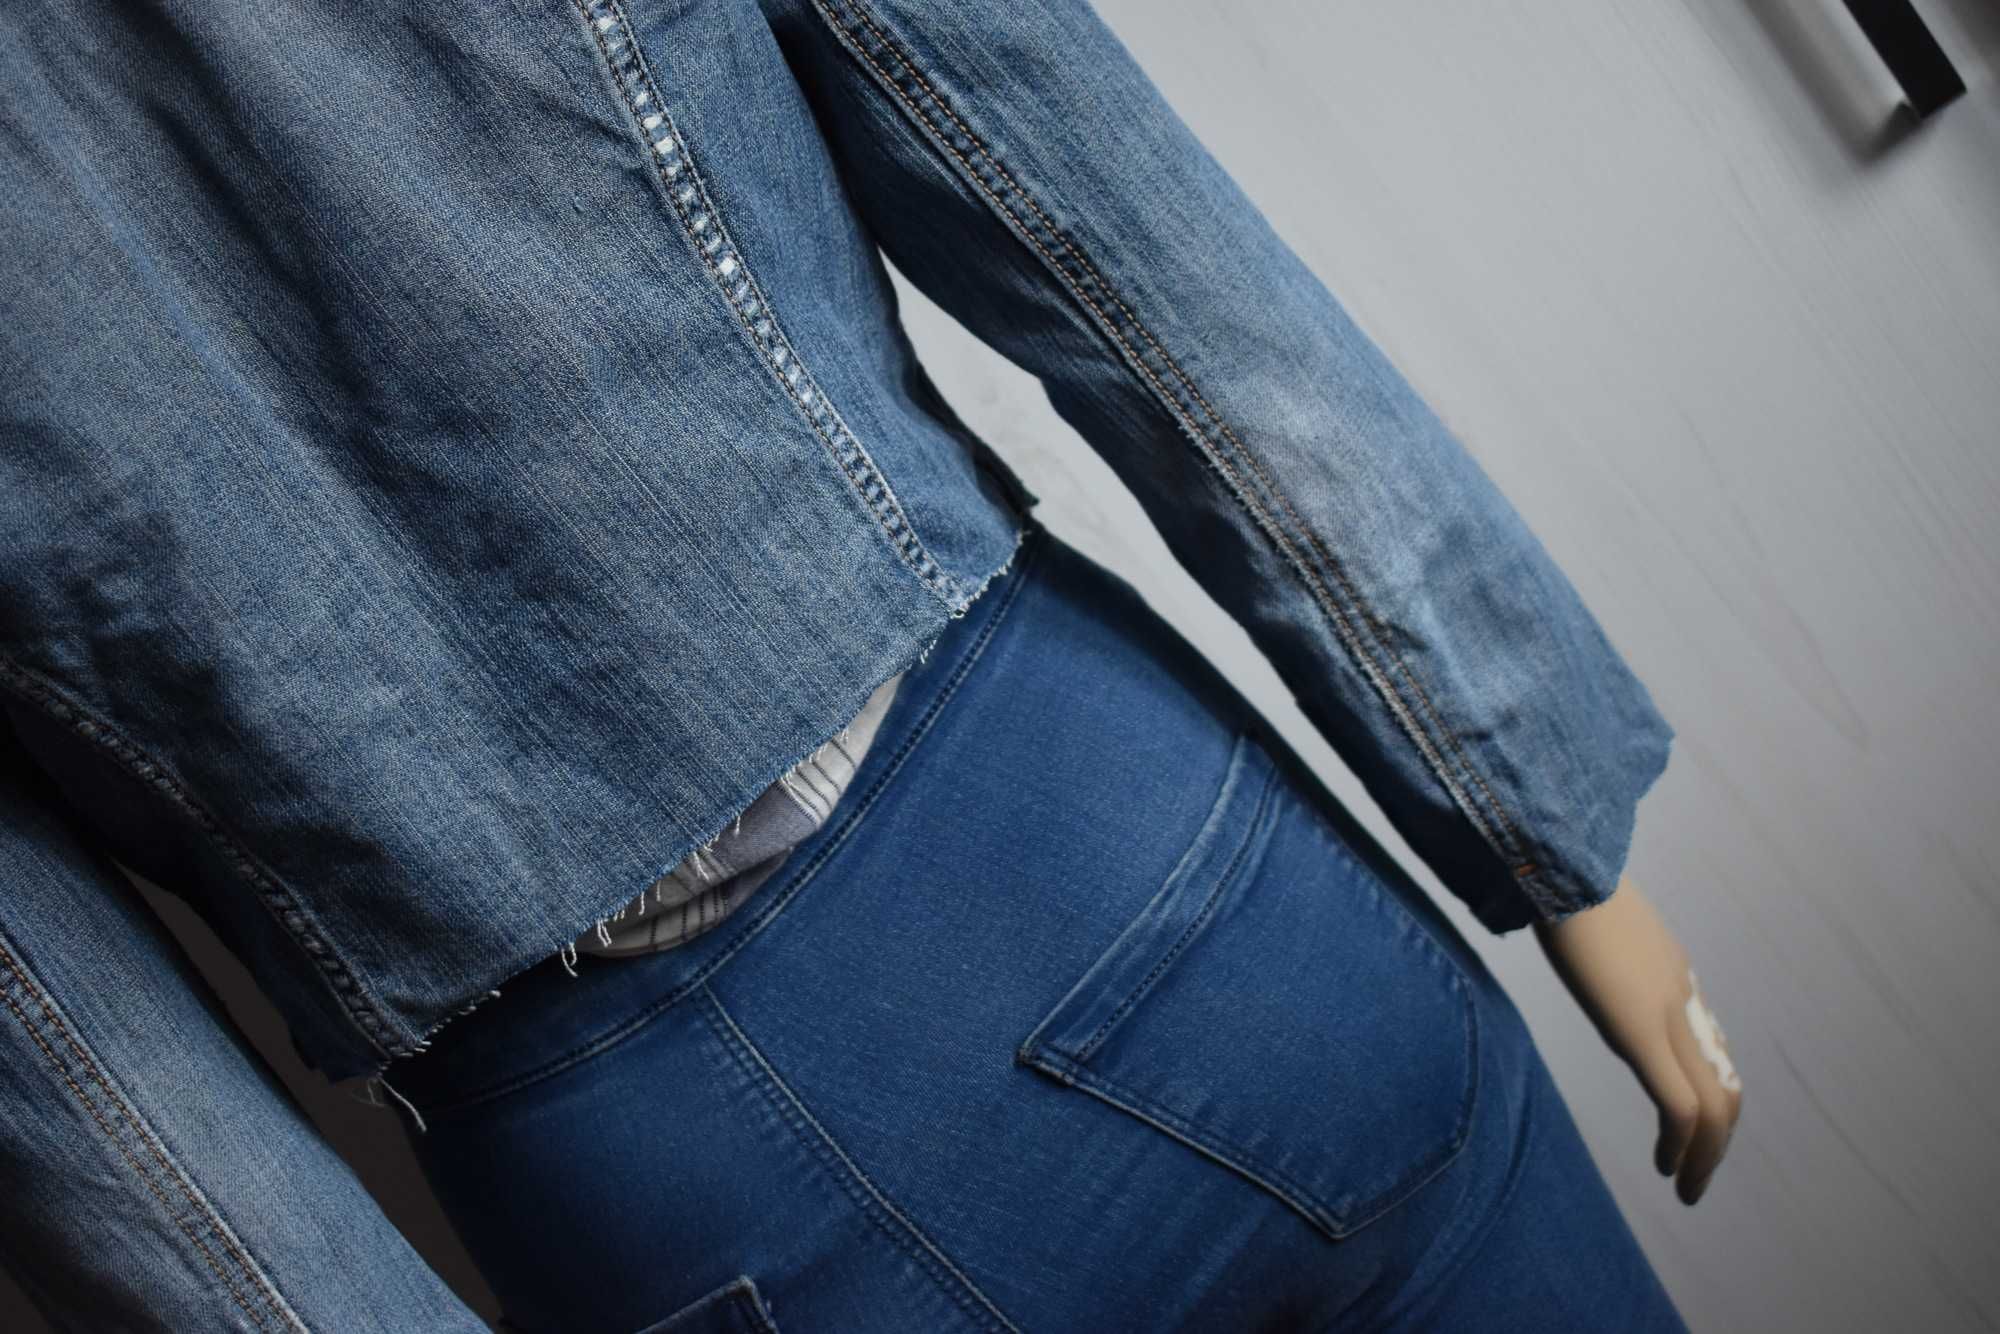 Kurtka dżinsowa 42 XL jeansowa ramoneska katana krótka denim bawełna